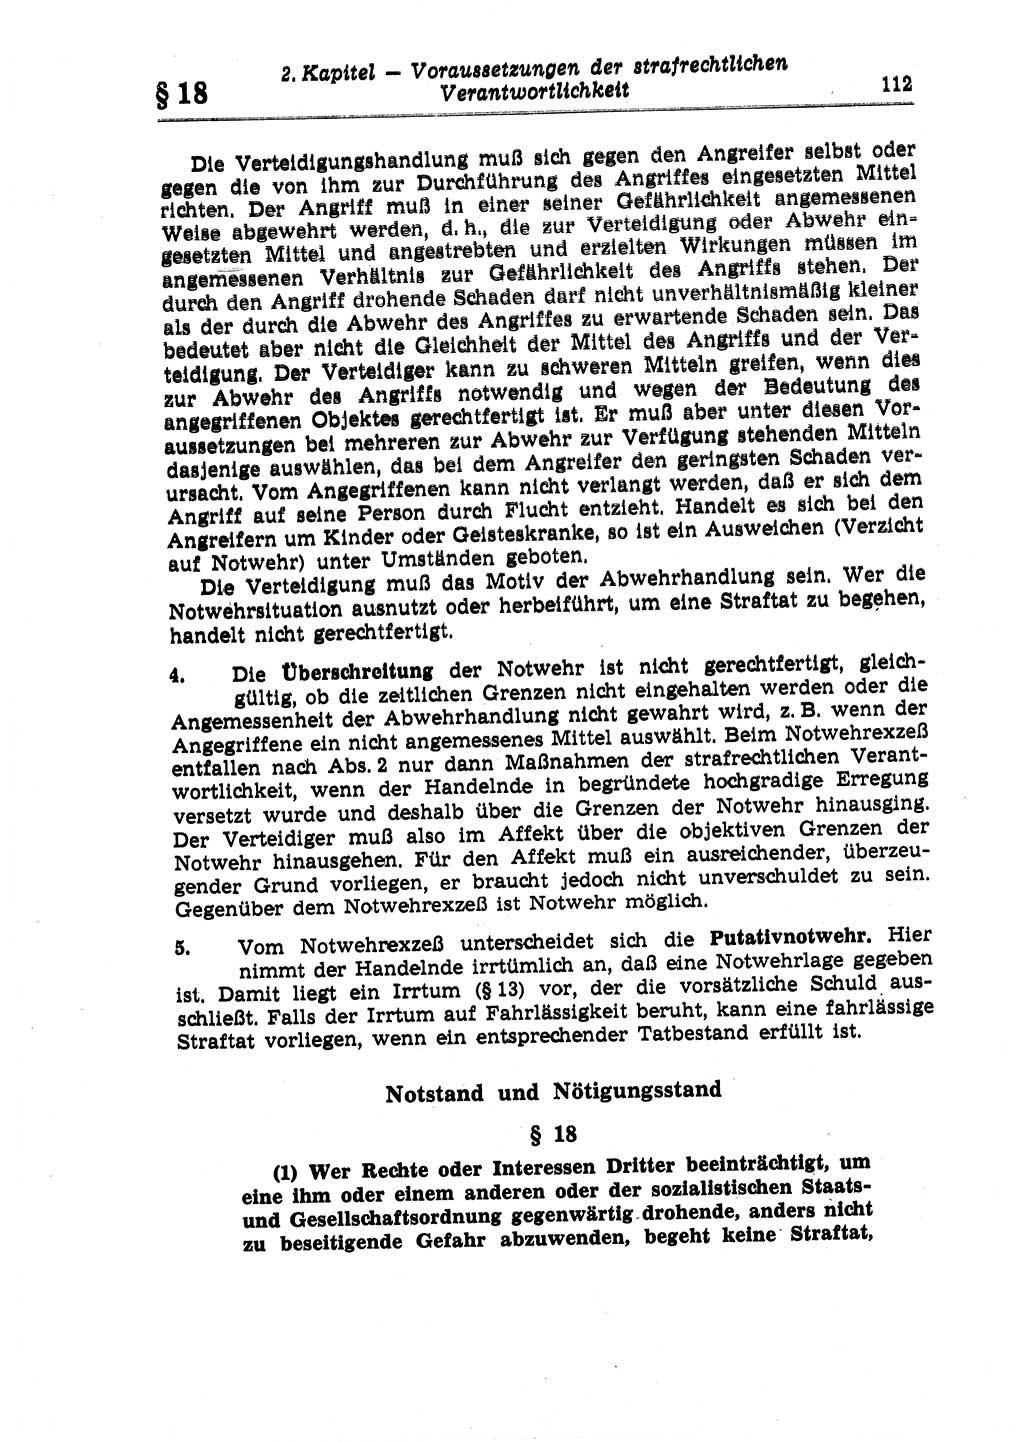 Strafrecht der Deutschen Demokratischen Republik (DDR), Lehrkommentar zum Strafgesetzbuch (StGB), Allgemeiner Teil 1970, Seite 112 (Strafr. DDR Lehrkomm. StGB AT 1970, S. 112)